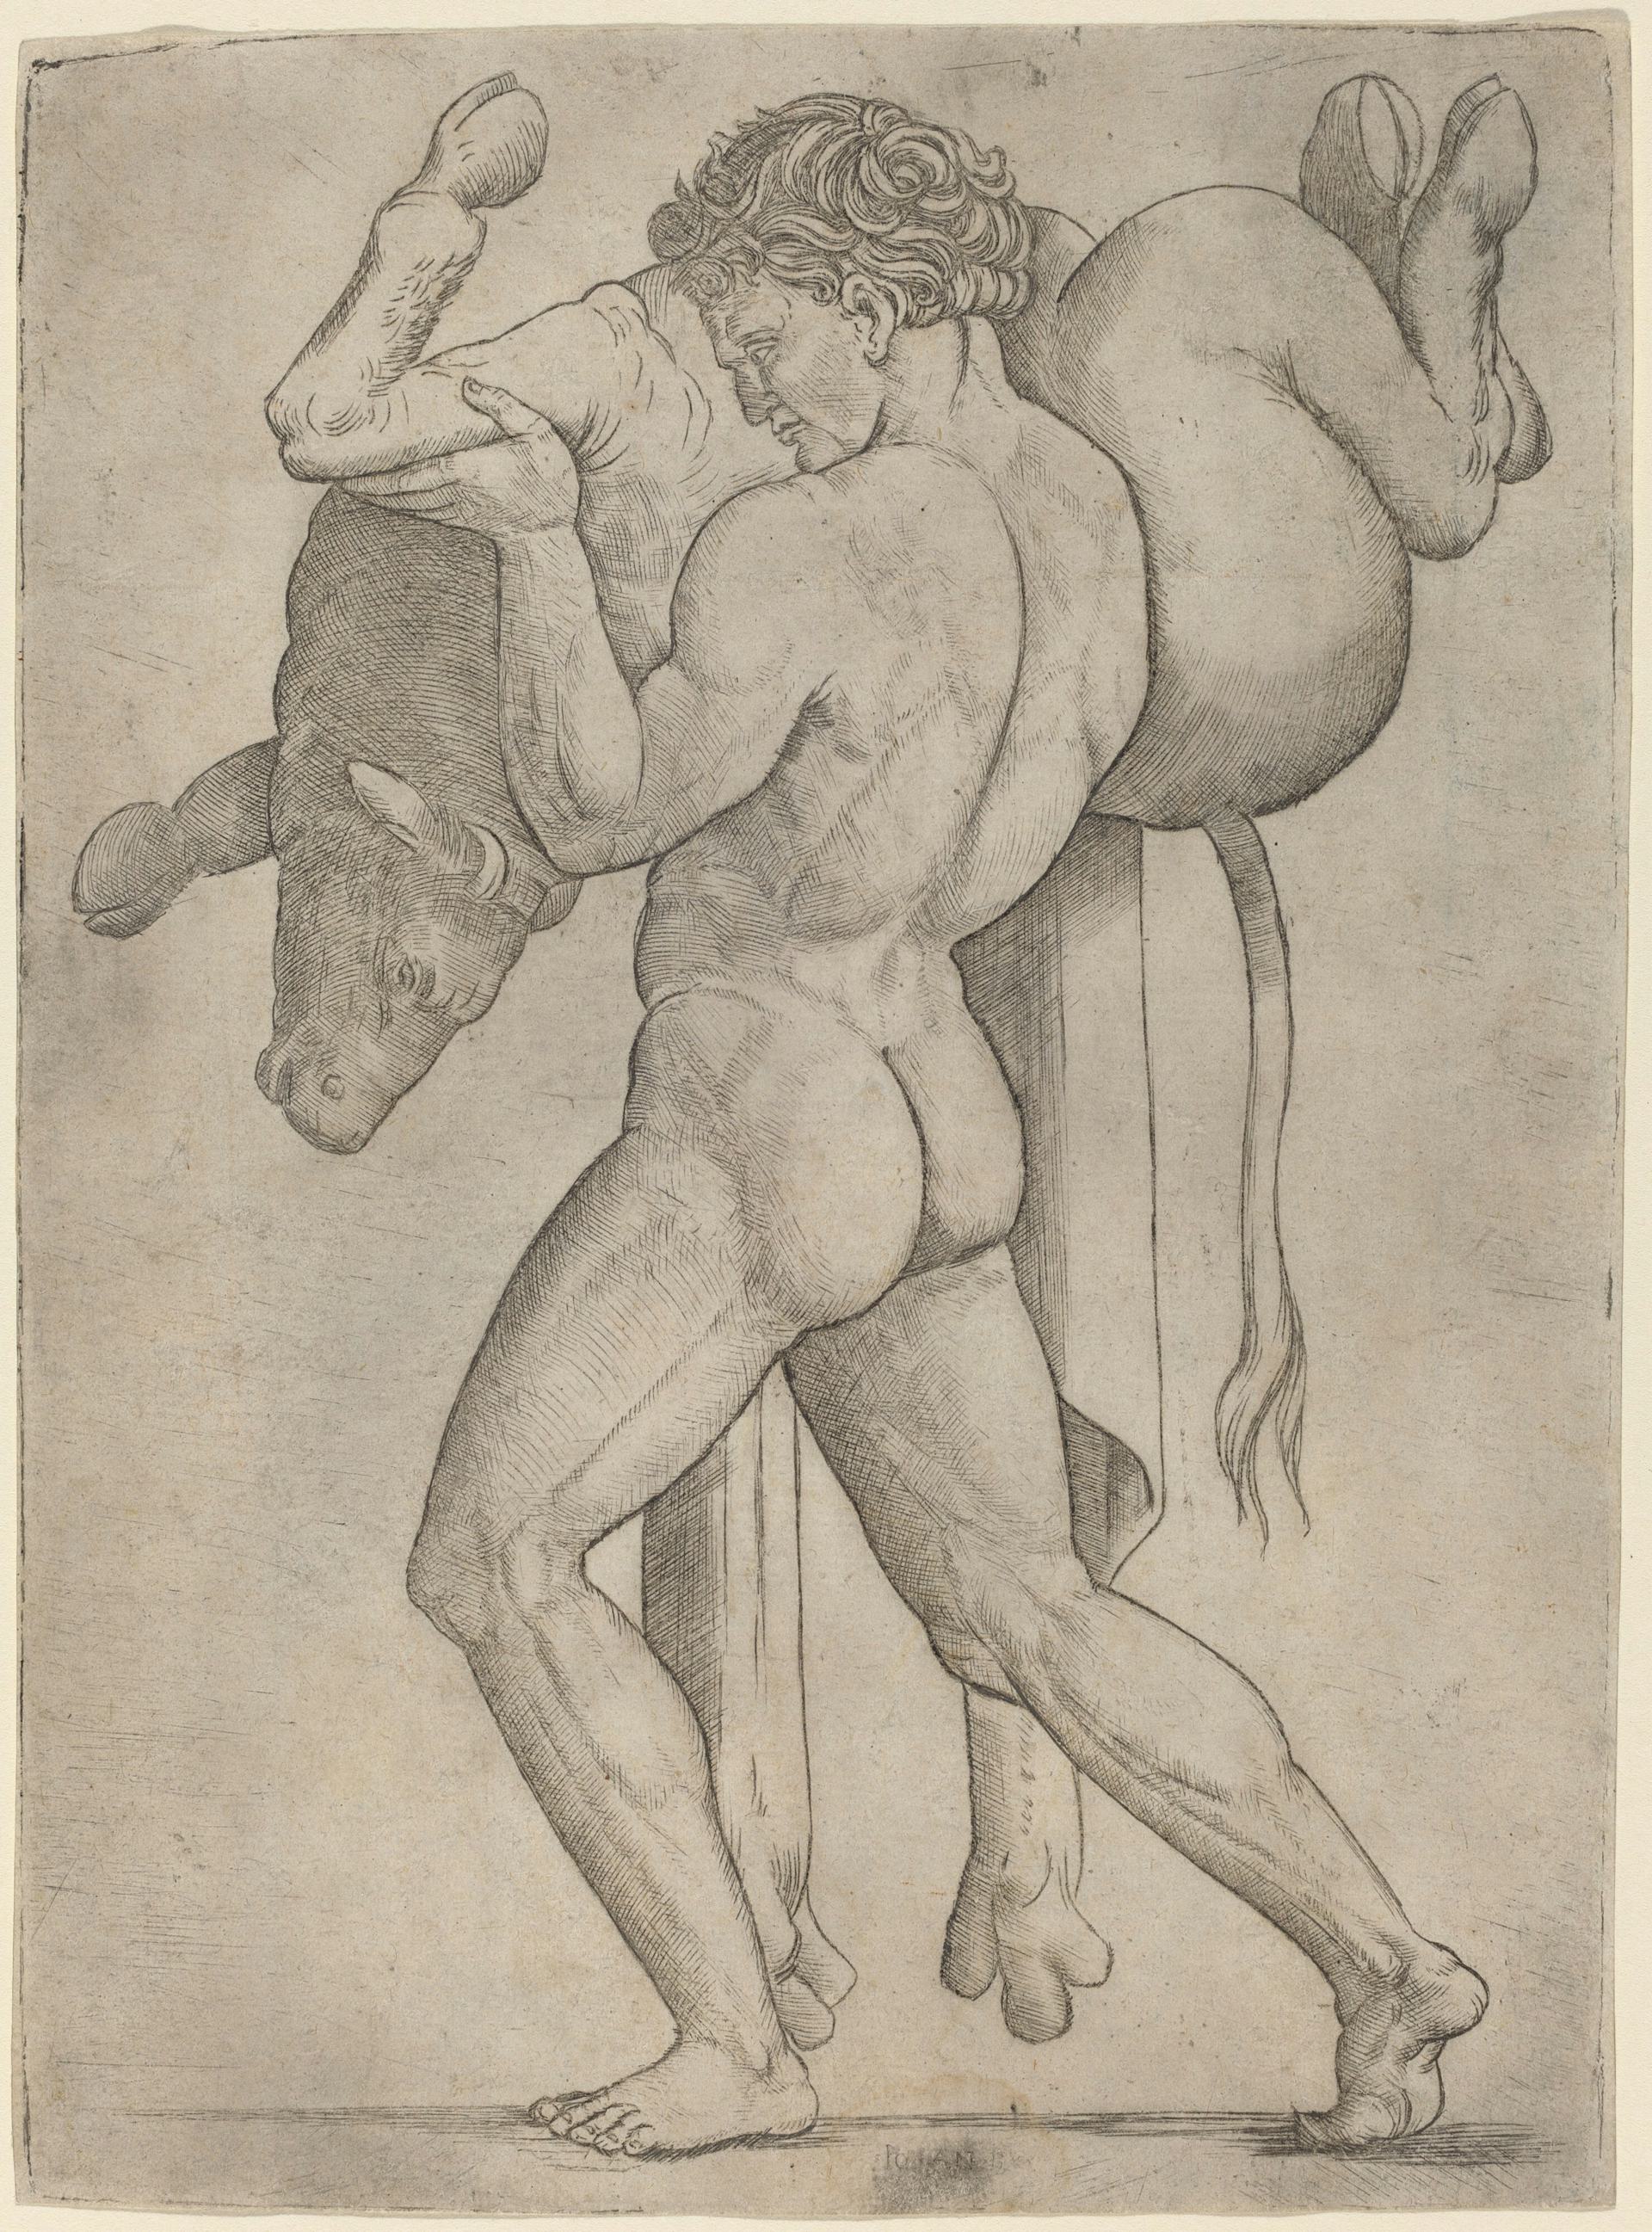 Hercules and the Cretan Bull by Giovanni Antonio da Brescia